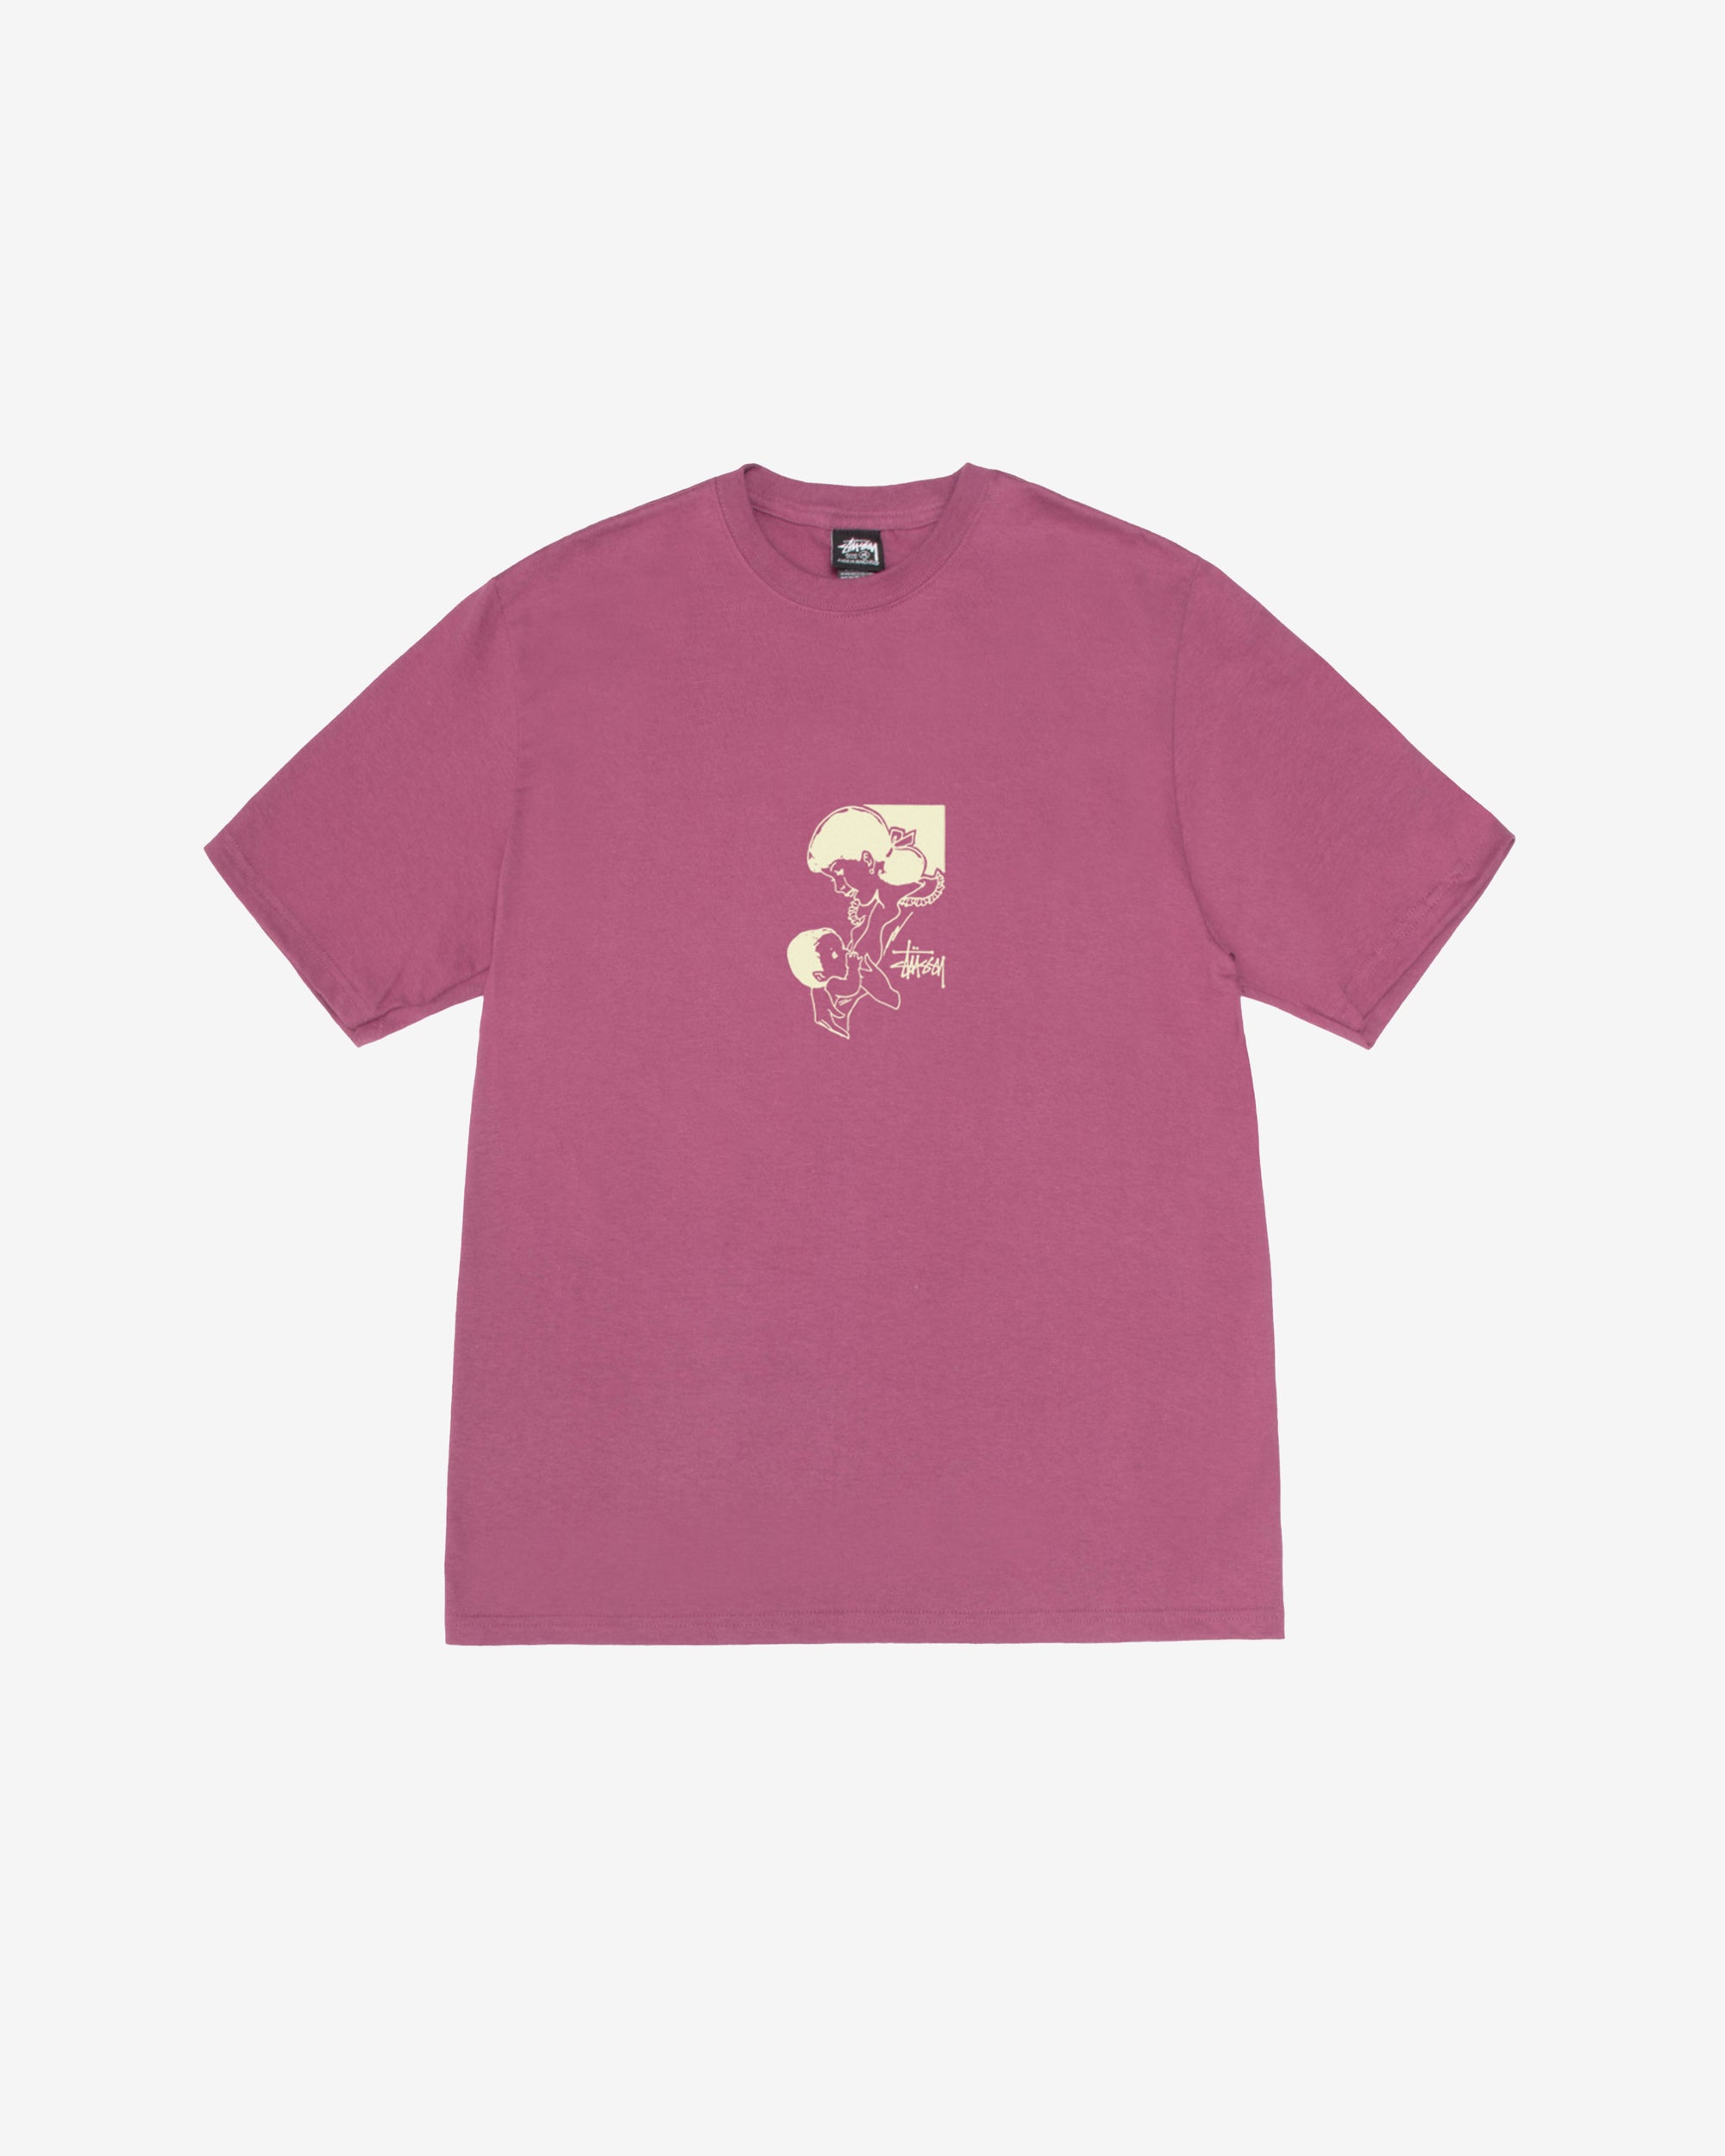 Stüssy - Men's Nurture T-Shirt - (Berry) – DSMNY E-SHOP